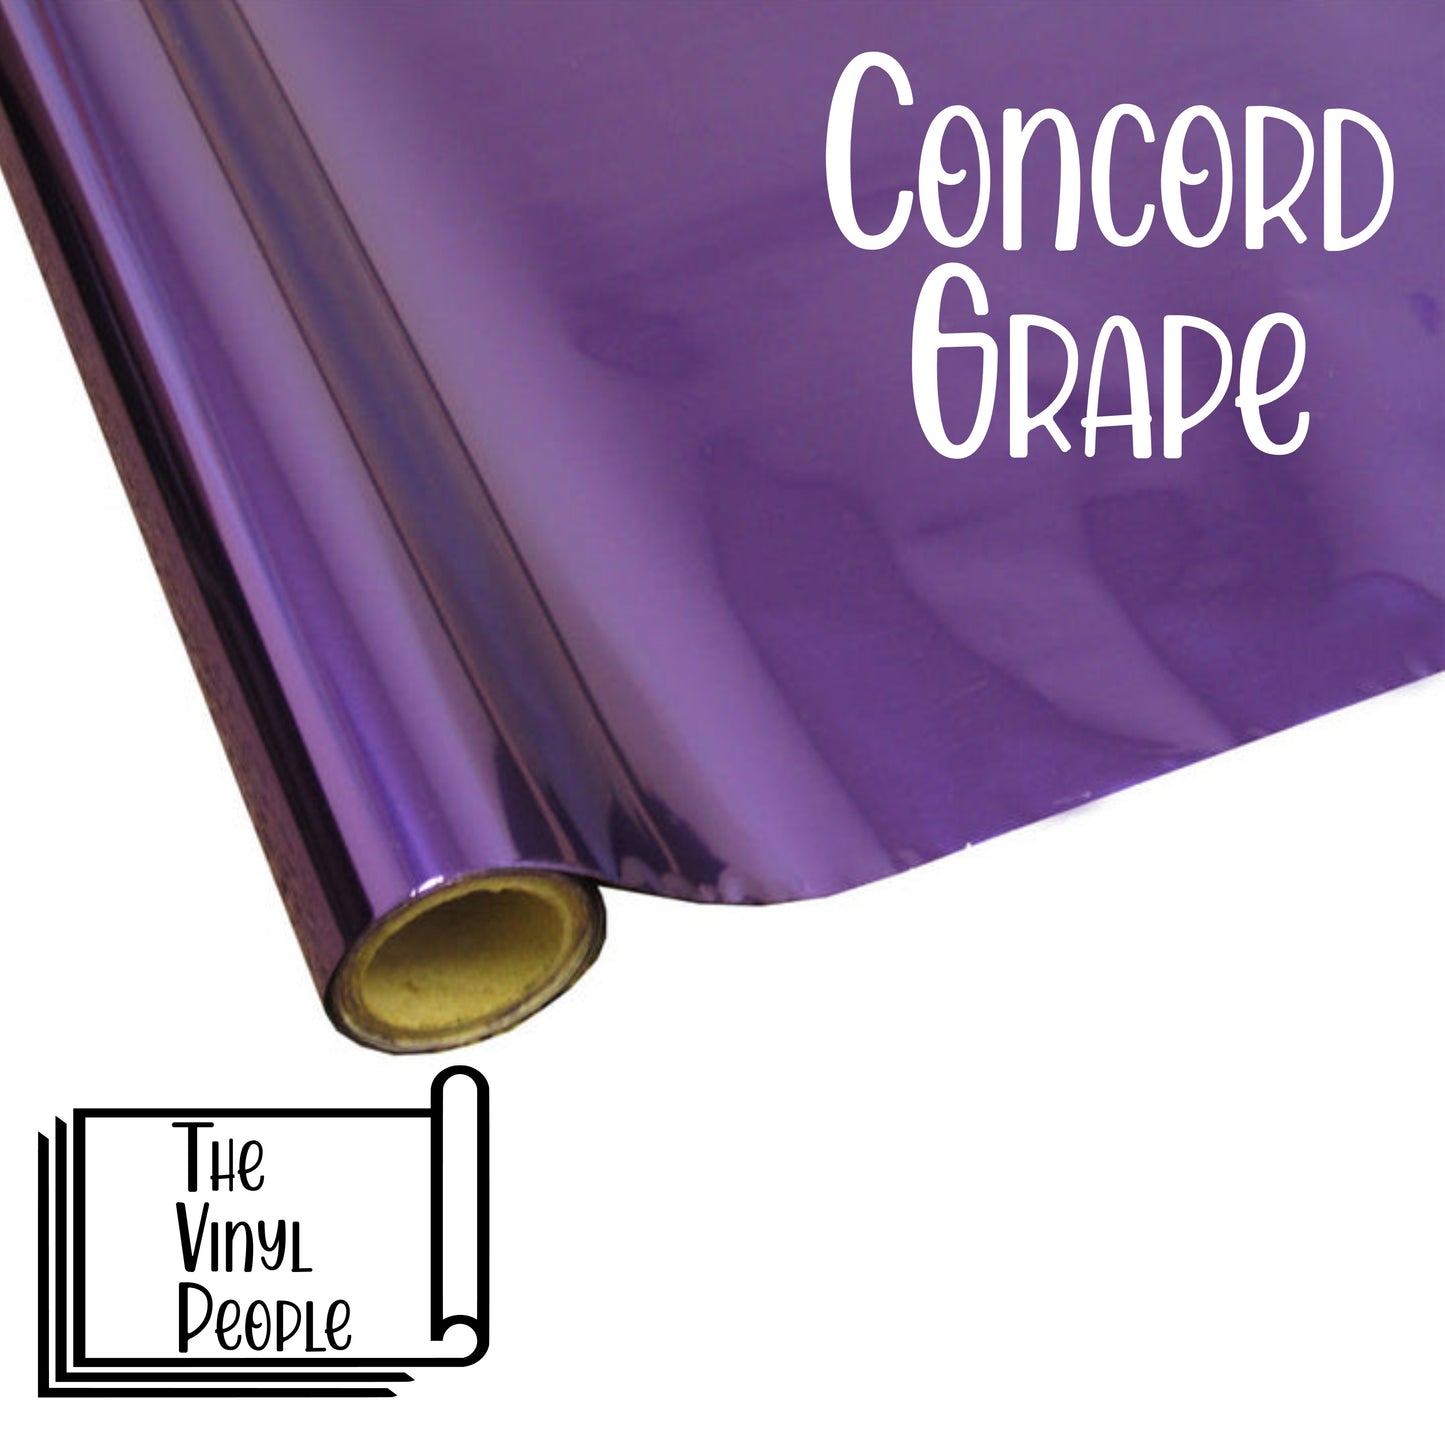 Concord Grape Foil